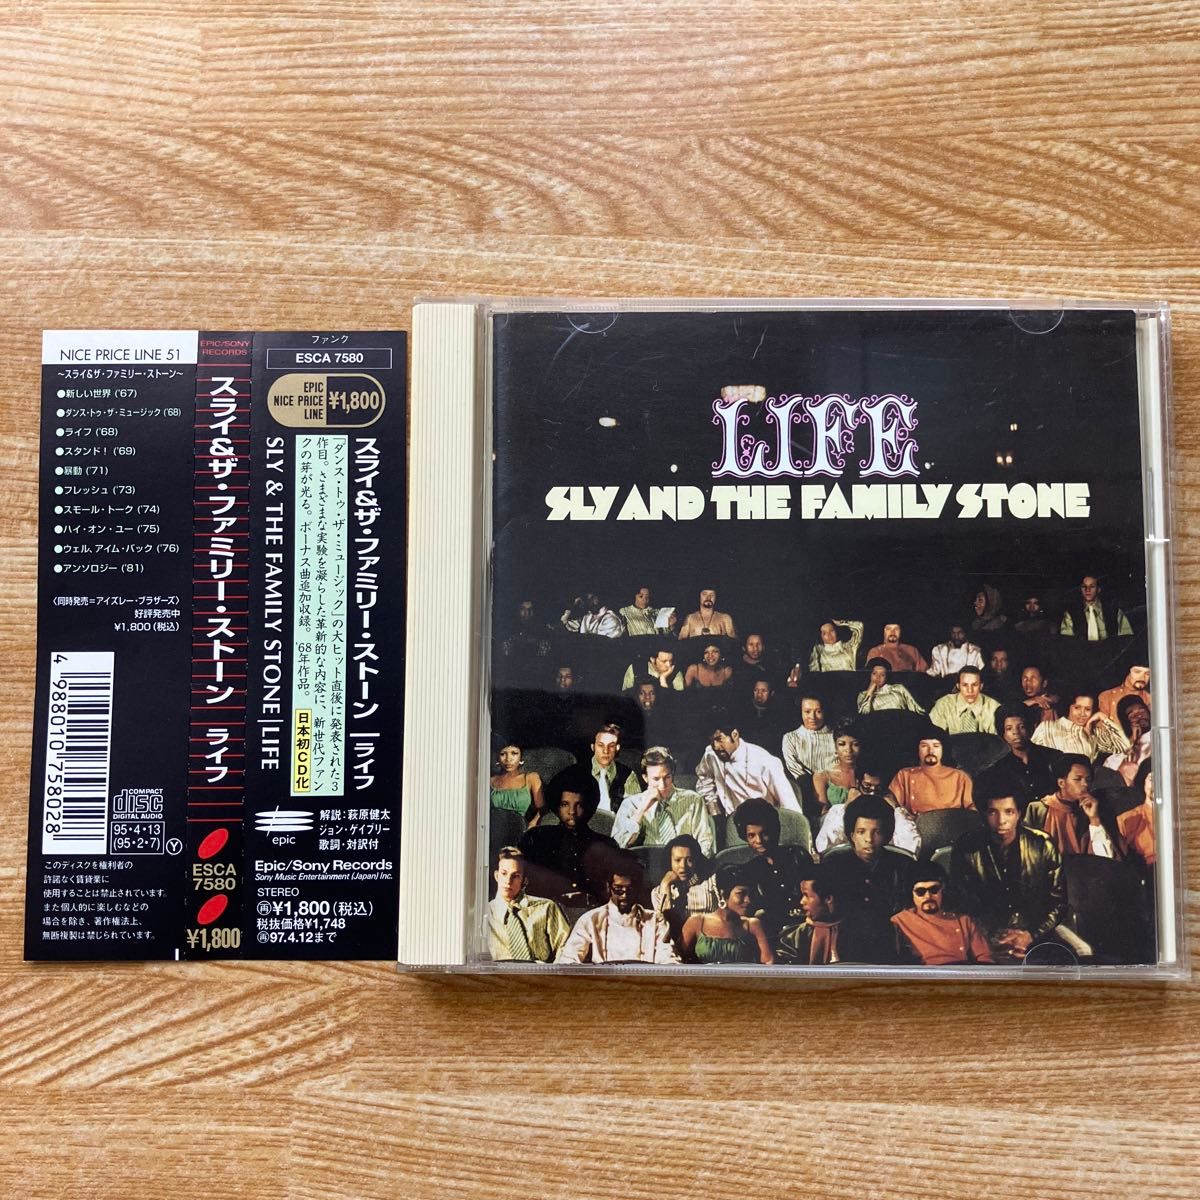 スライ&ザ・ファミリー・ストーン Sly & the Family Stone / ライフ 国内盤 帯付 歌詞・対訳・解説付